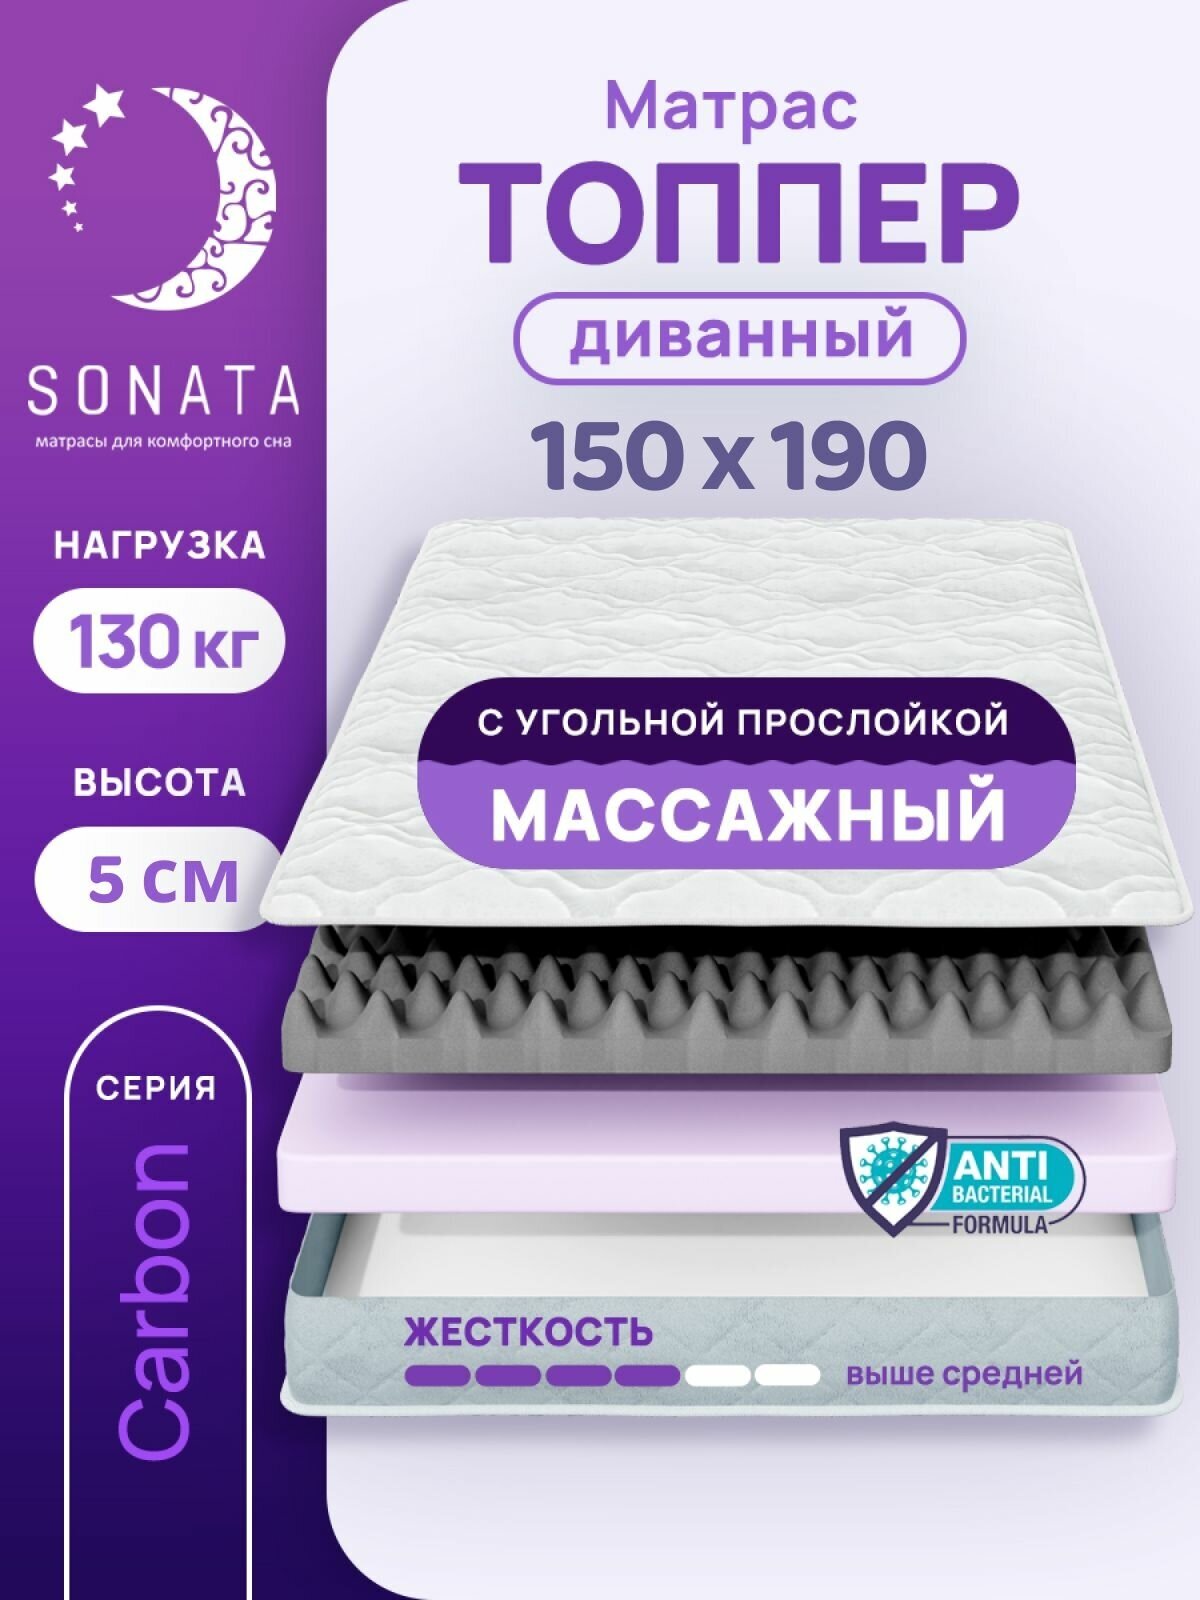 Топпер матрас 150х190 см SONATA, ортопедический, беспружинный, двуспальный, тонкий матрац для дивана, кровати, высота 5 см с массажным эффектом